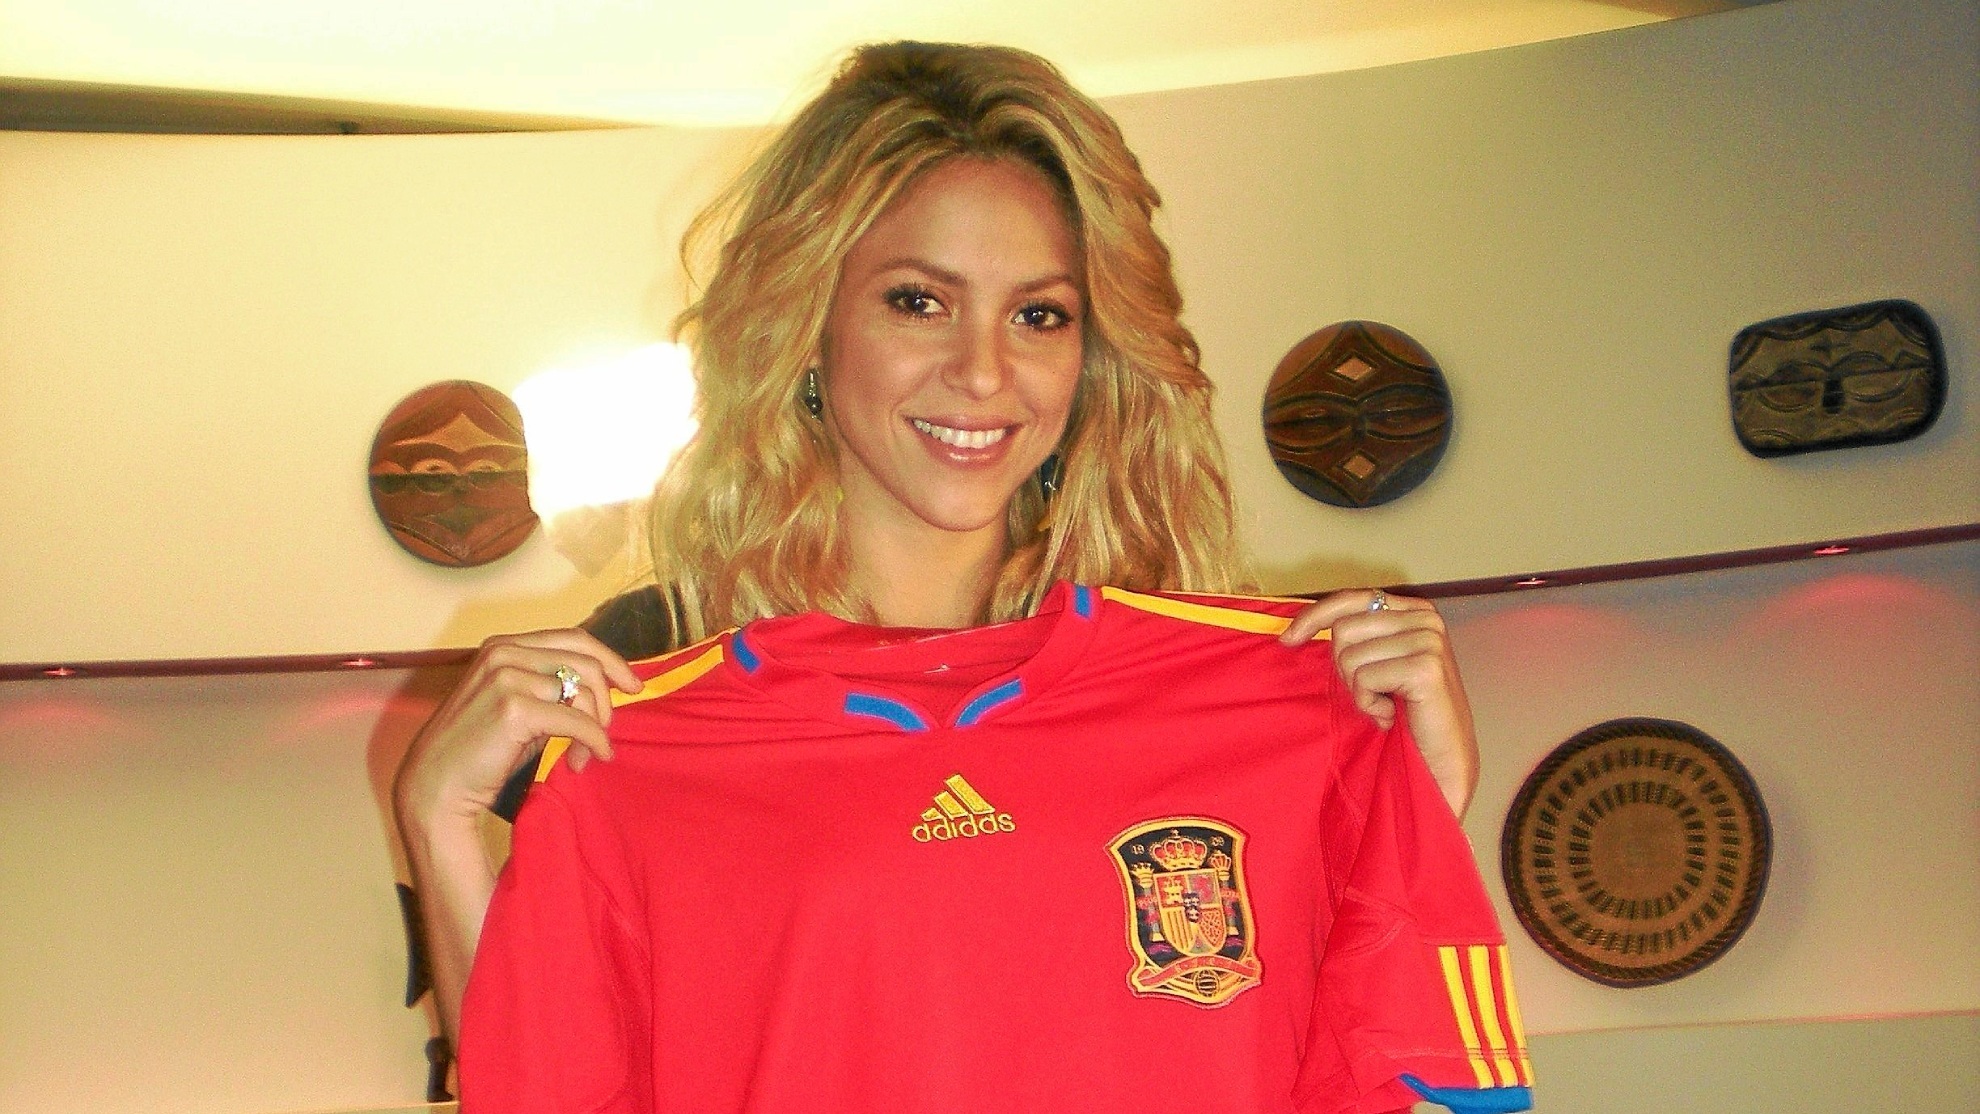 Echan la culpa a Shakira por la eliminación de España "Fue por su maldición" | Marcausa